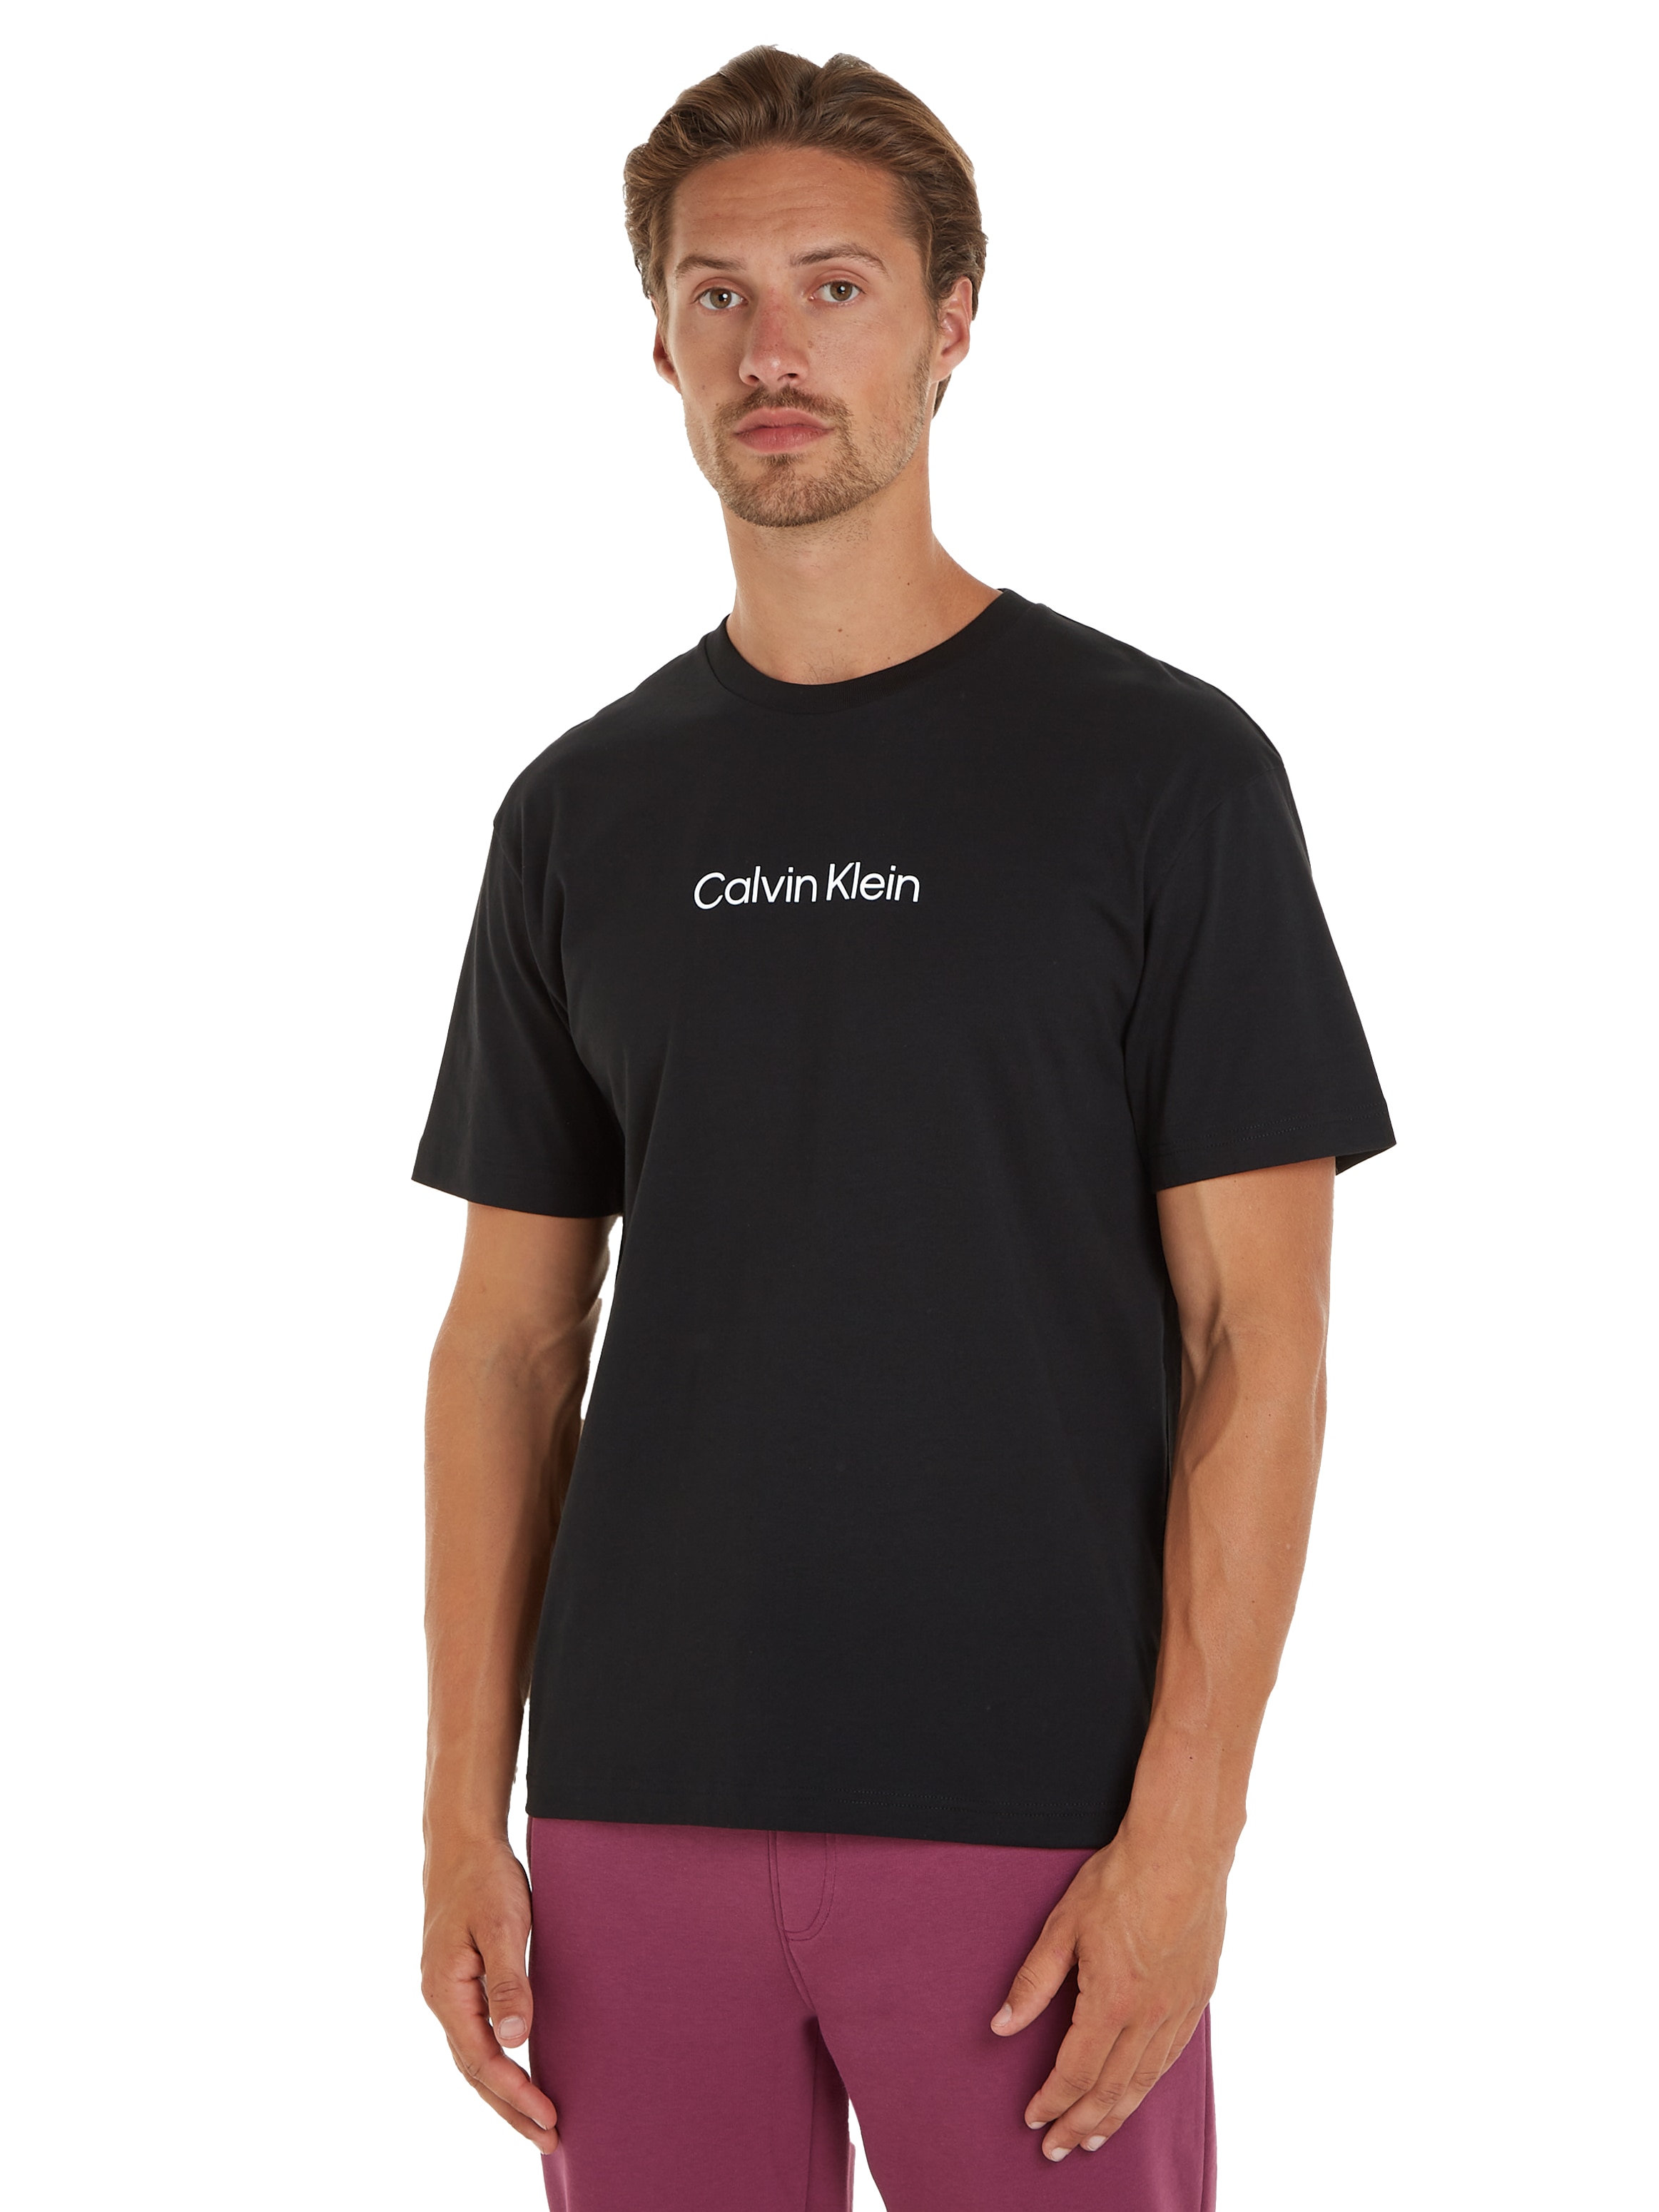 mit ♕ LOGO COMFORT Klein Calvin aufgedrucktem »HERO Markenlabel bei T-SHIRT«, T-Shirt